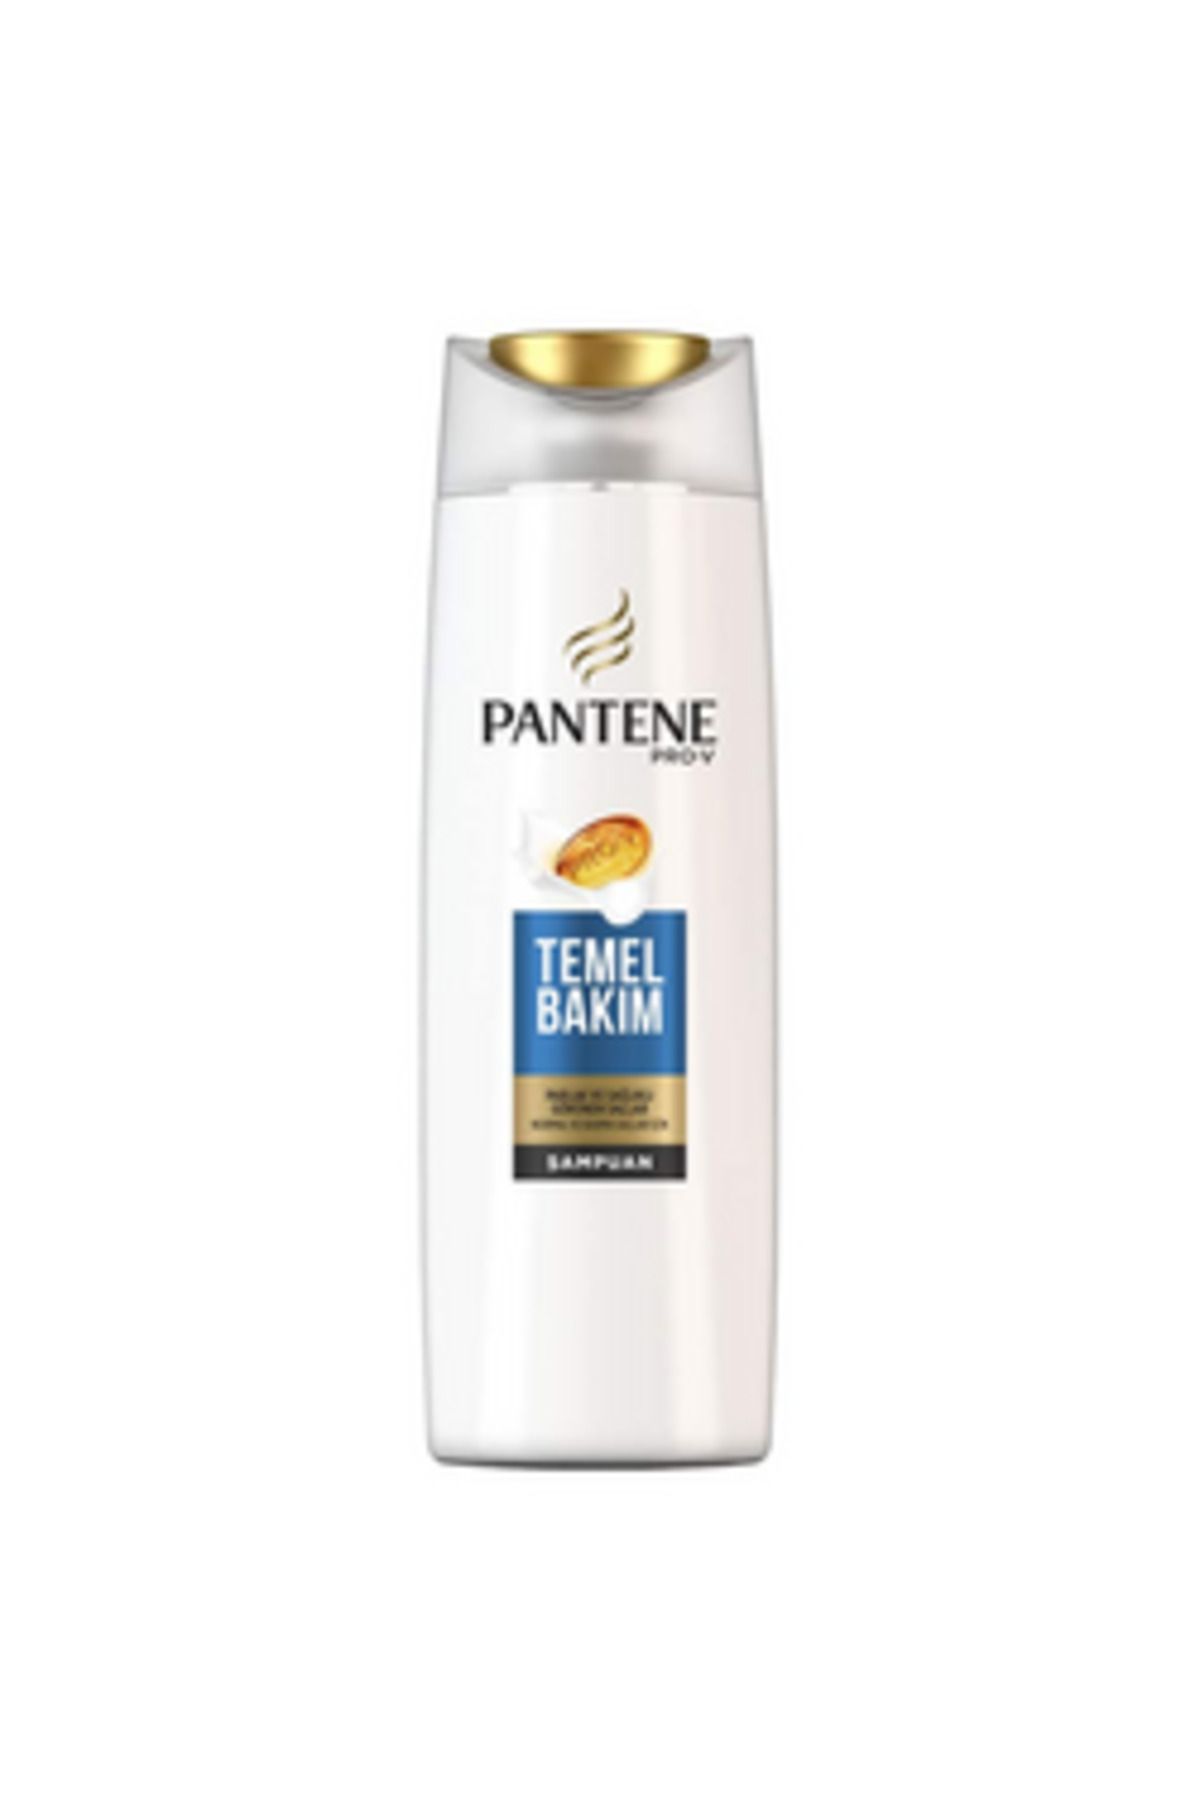 Pantene ( 2 ADET ) Pantene Temel Bakım Şampuanı 500 Ml ( KÜÇÜK KOLONYA HEDİYE )